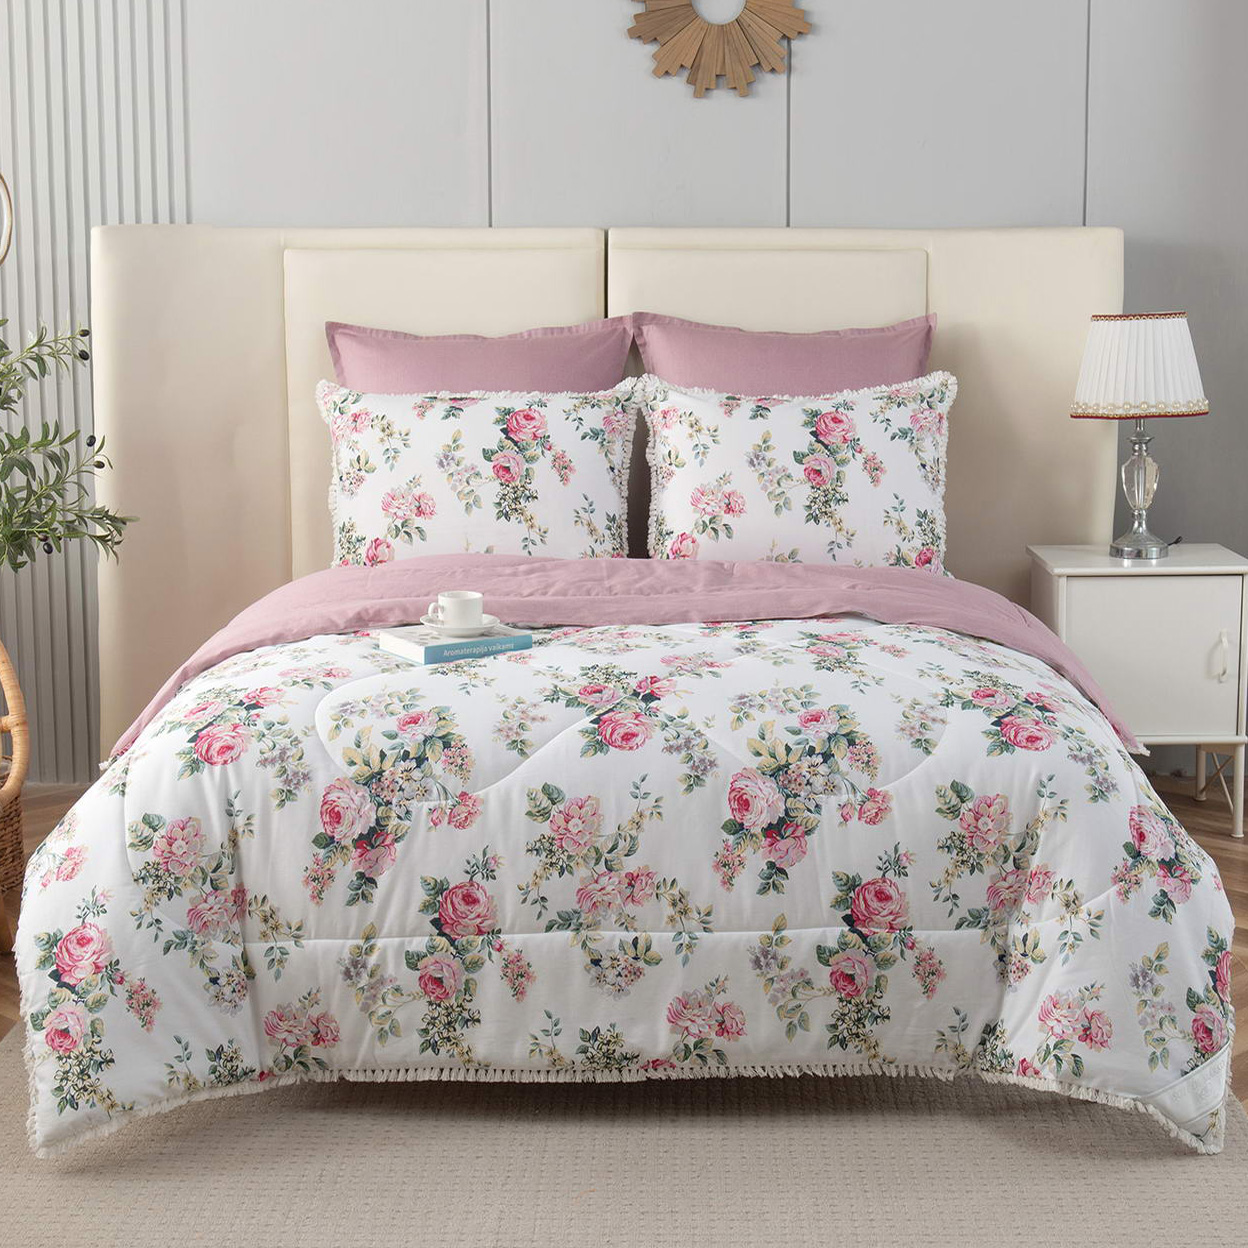 Постельное белье с одеялом-покрывалом Бернадетт цвет: розовый, белый (семейное)